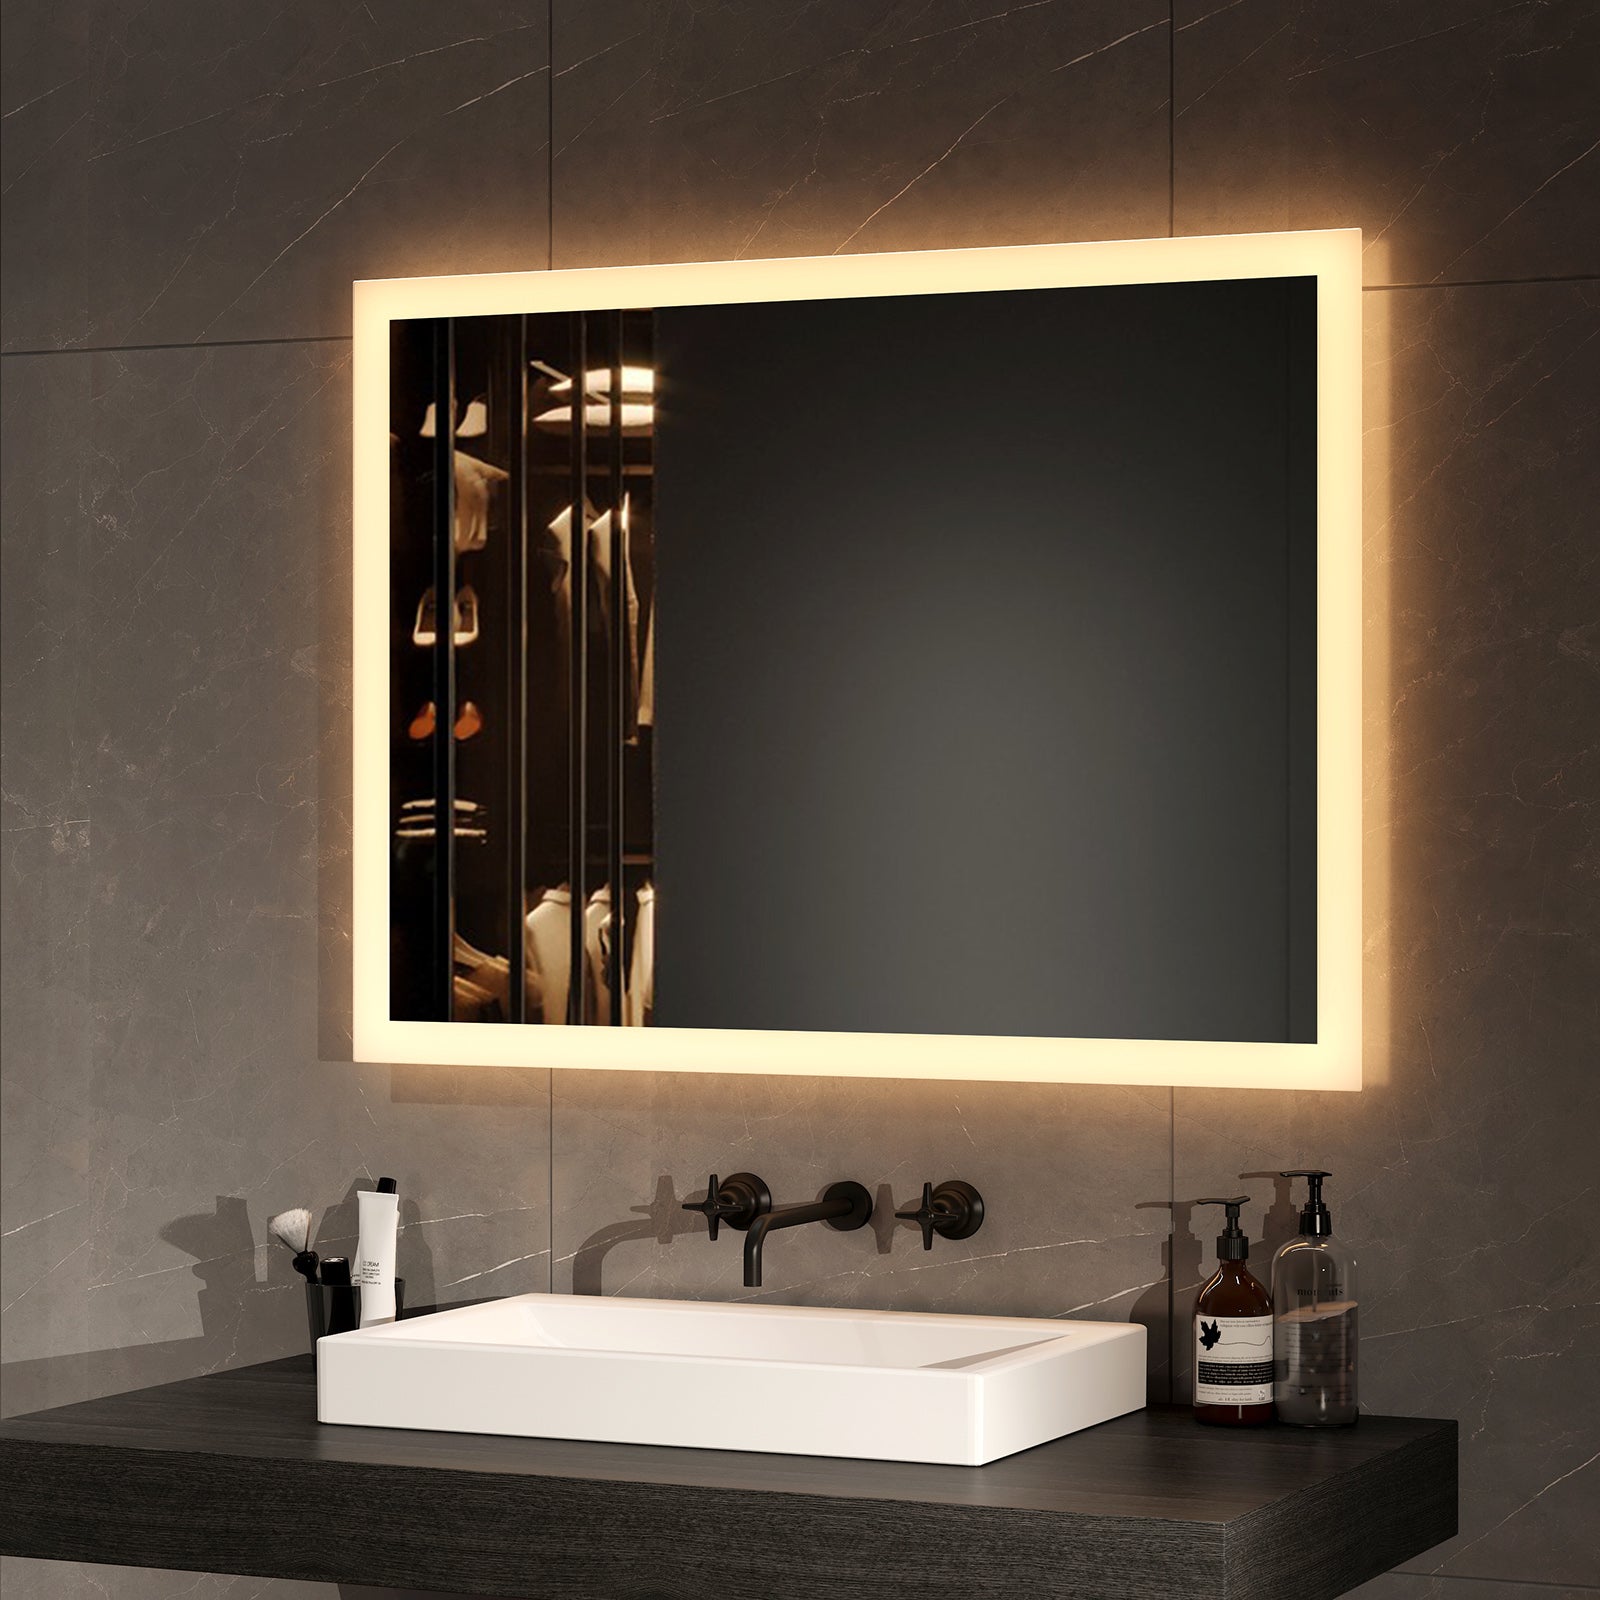 EMKE Wandspiegel Badezimmer mit Beleuchtung – 3000K Lichtfarbe – IP44 – 60 x 80 cm